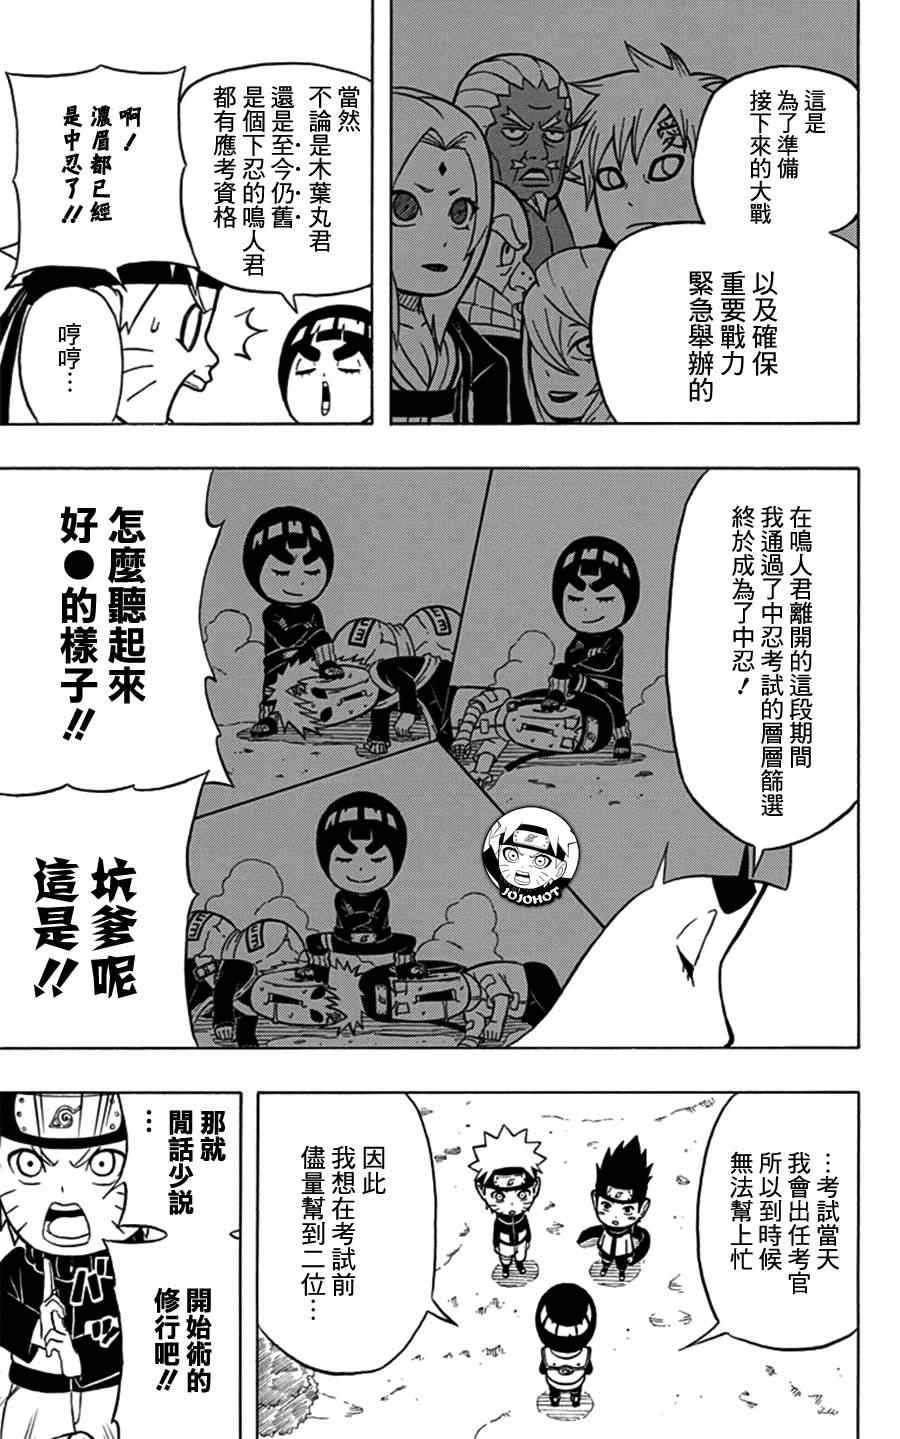 《洛克李之青春活力全开忍传》漫画 洛克李 特别篇